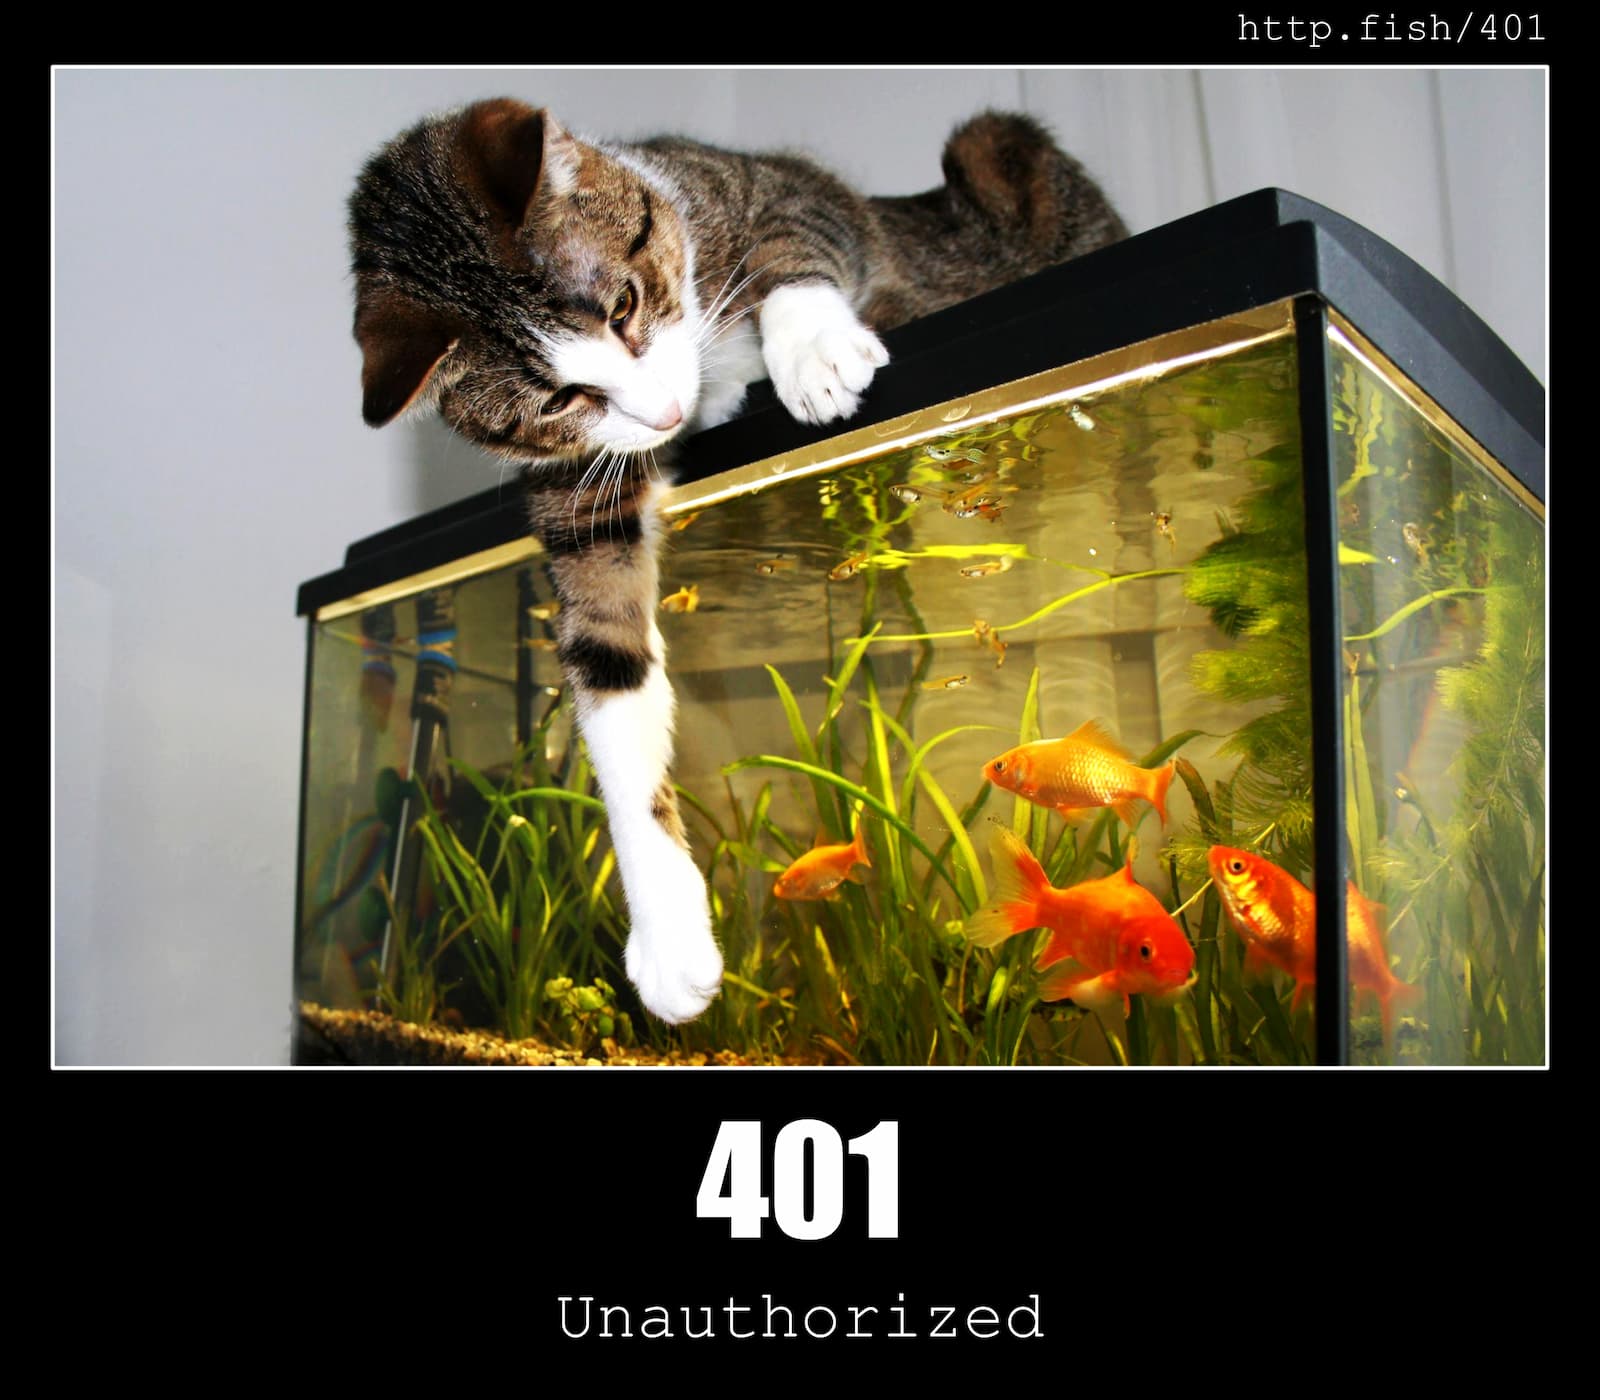 HTTP Status Code 401 Unauthorized & Fish